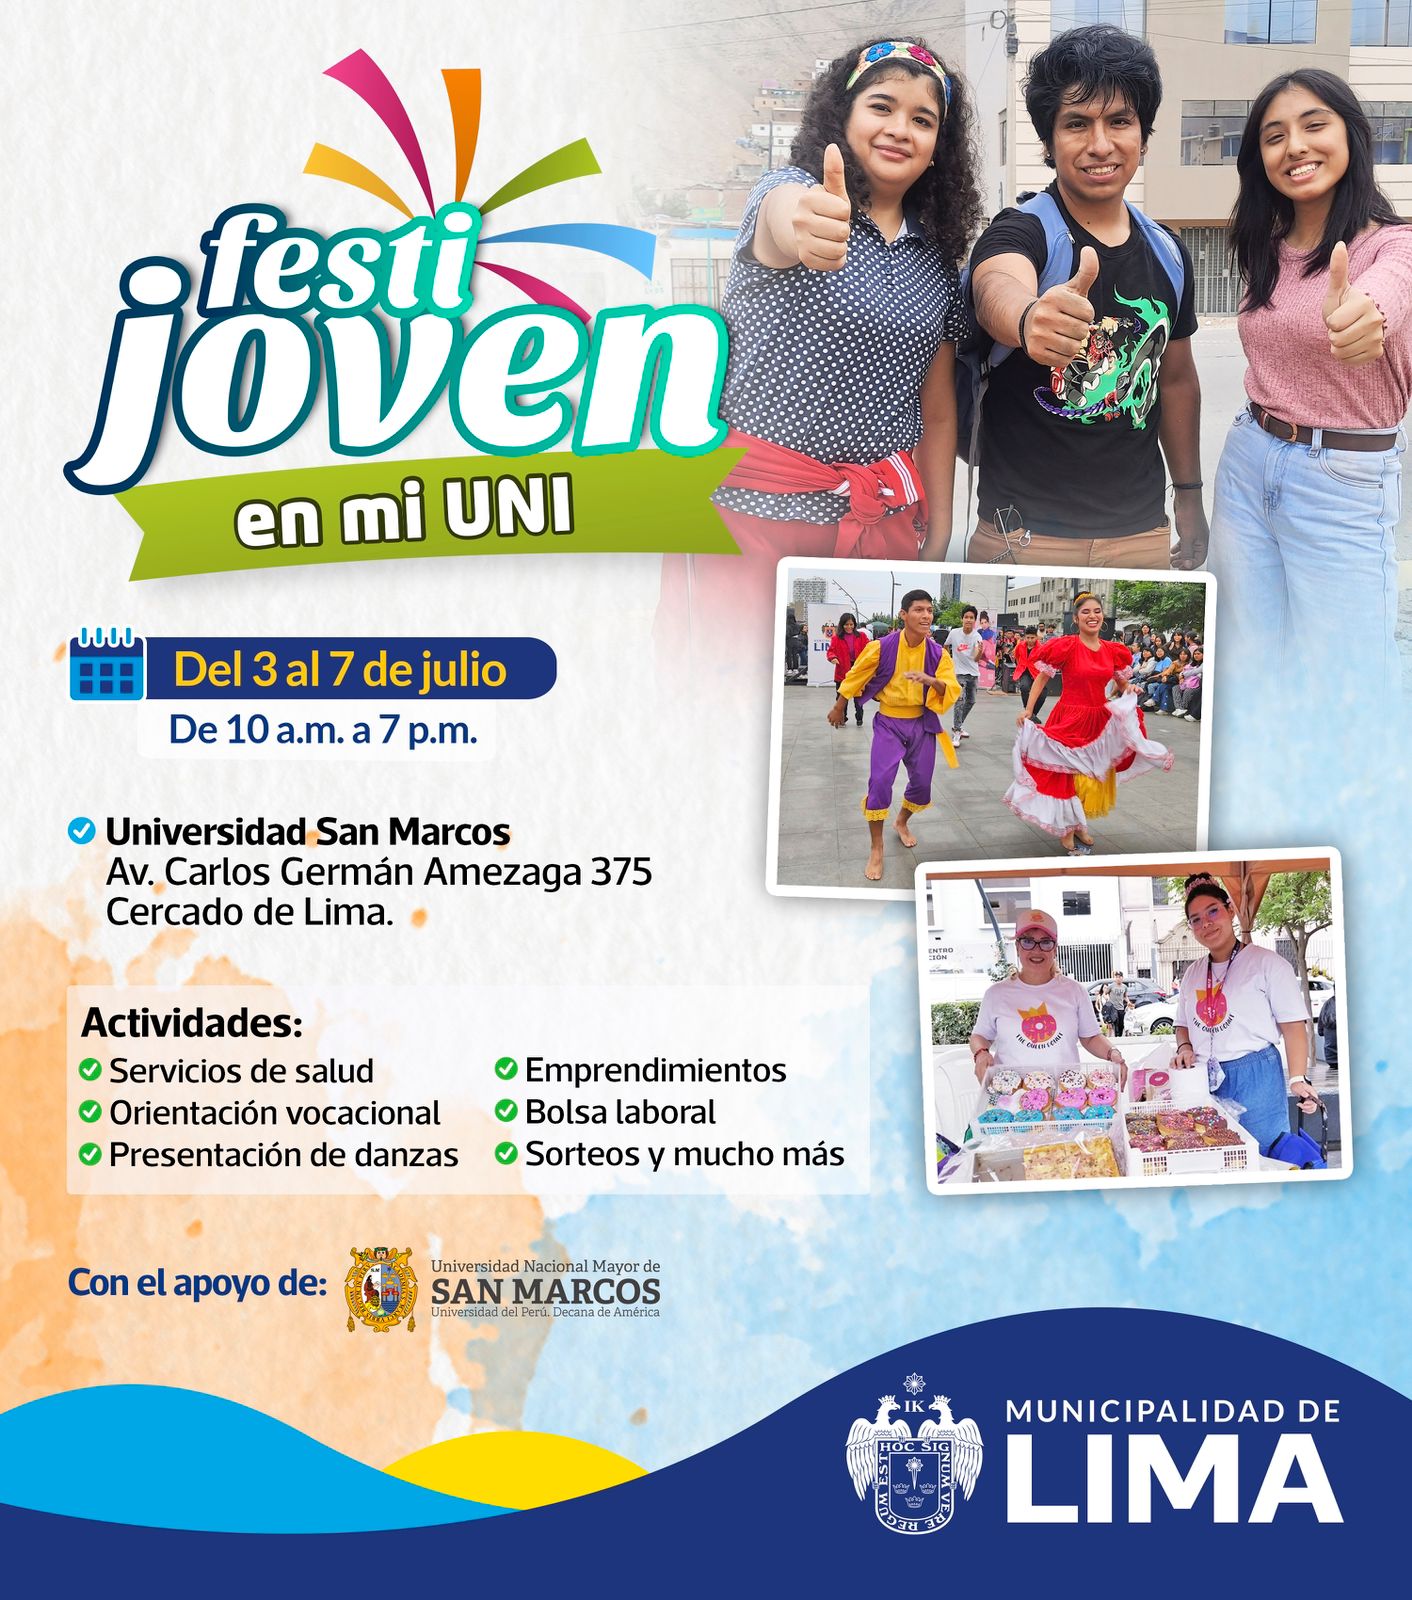 Primer Festival Juvenil en Universidades – FESTIJOVEN, se celebrará en la Universidad Nacional Mayor de San Marcos.